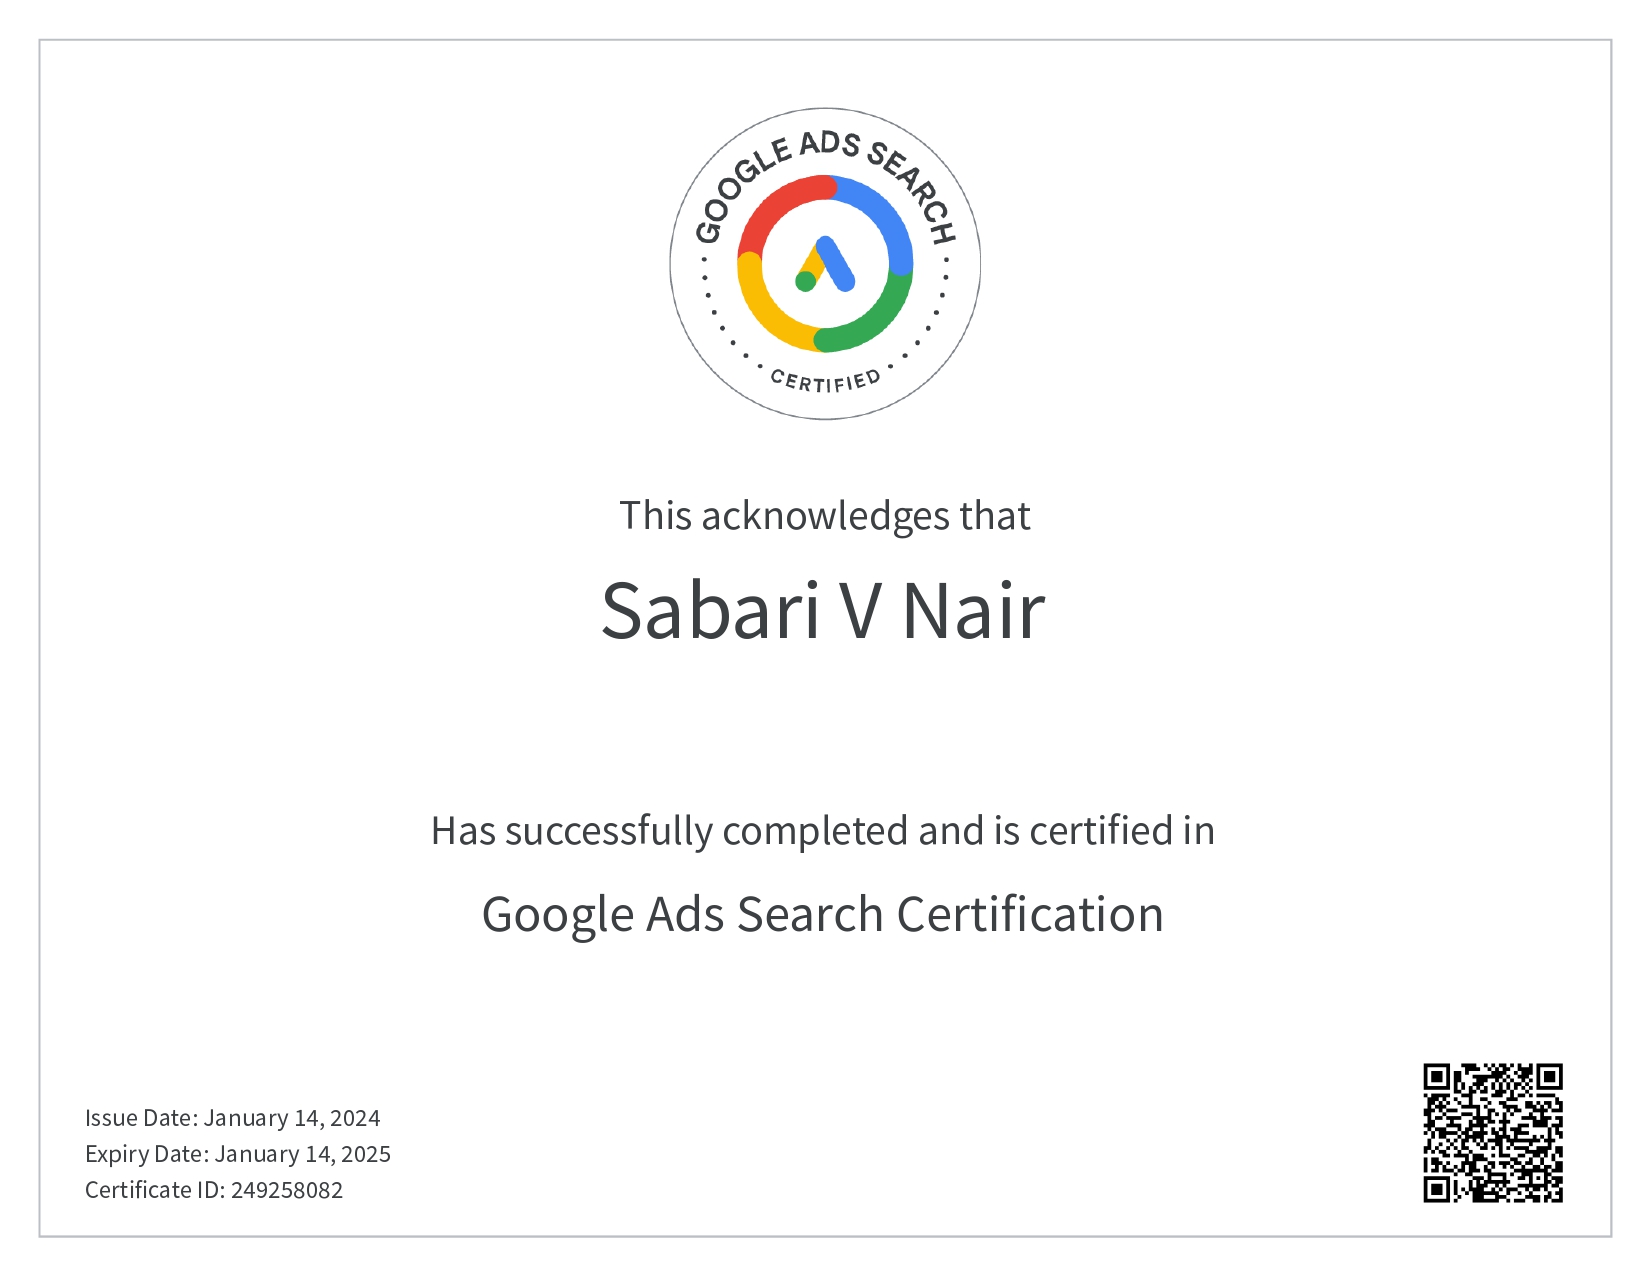 Google Search Ad- Sabari V Nair